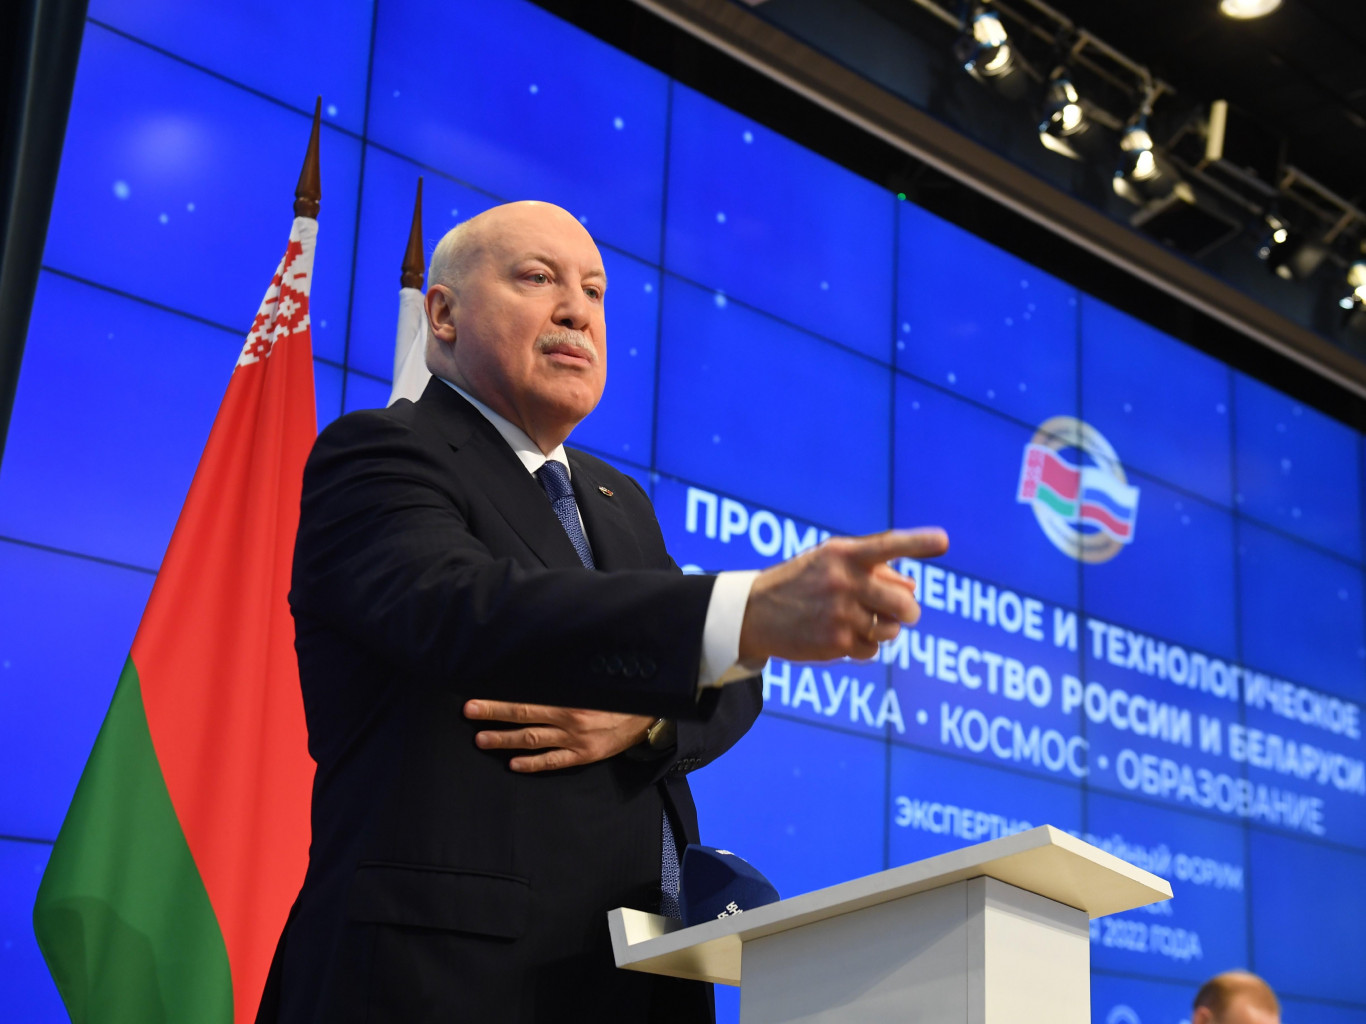 «Будем тратить деньги». Зачем Лукашенко совместный с Россией медиахолдинг?